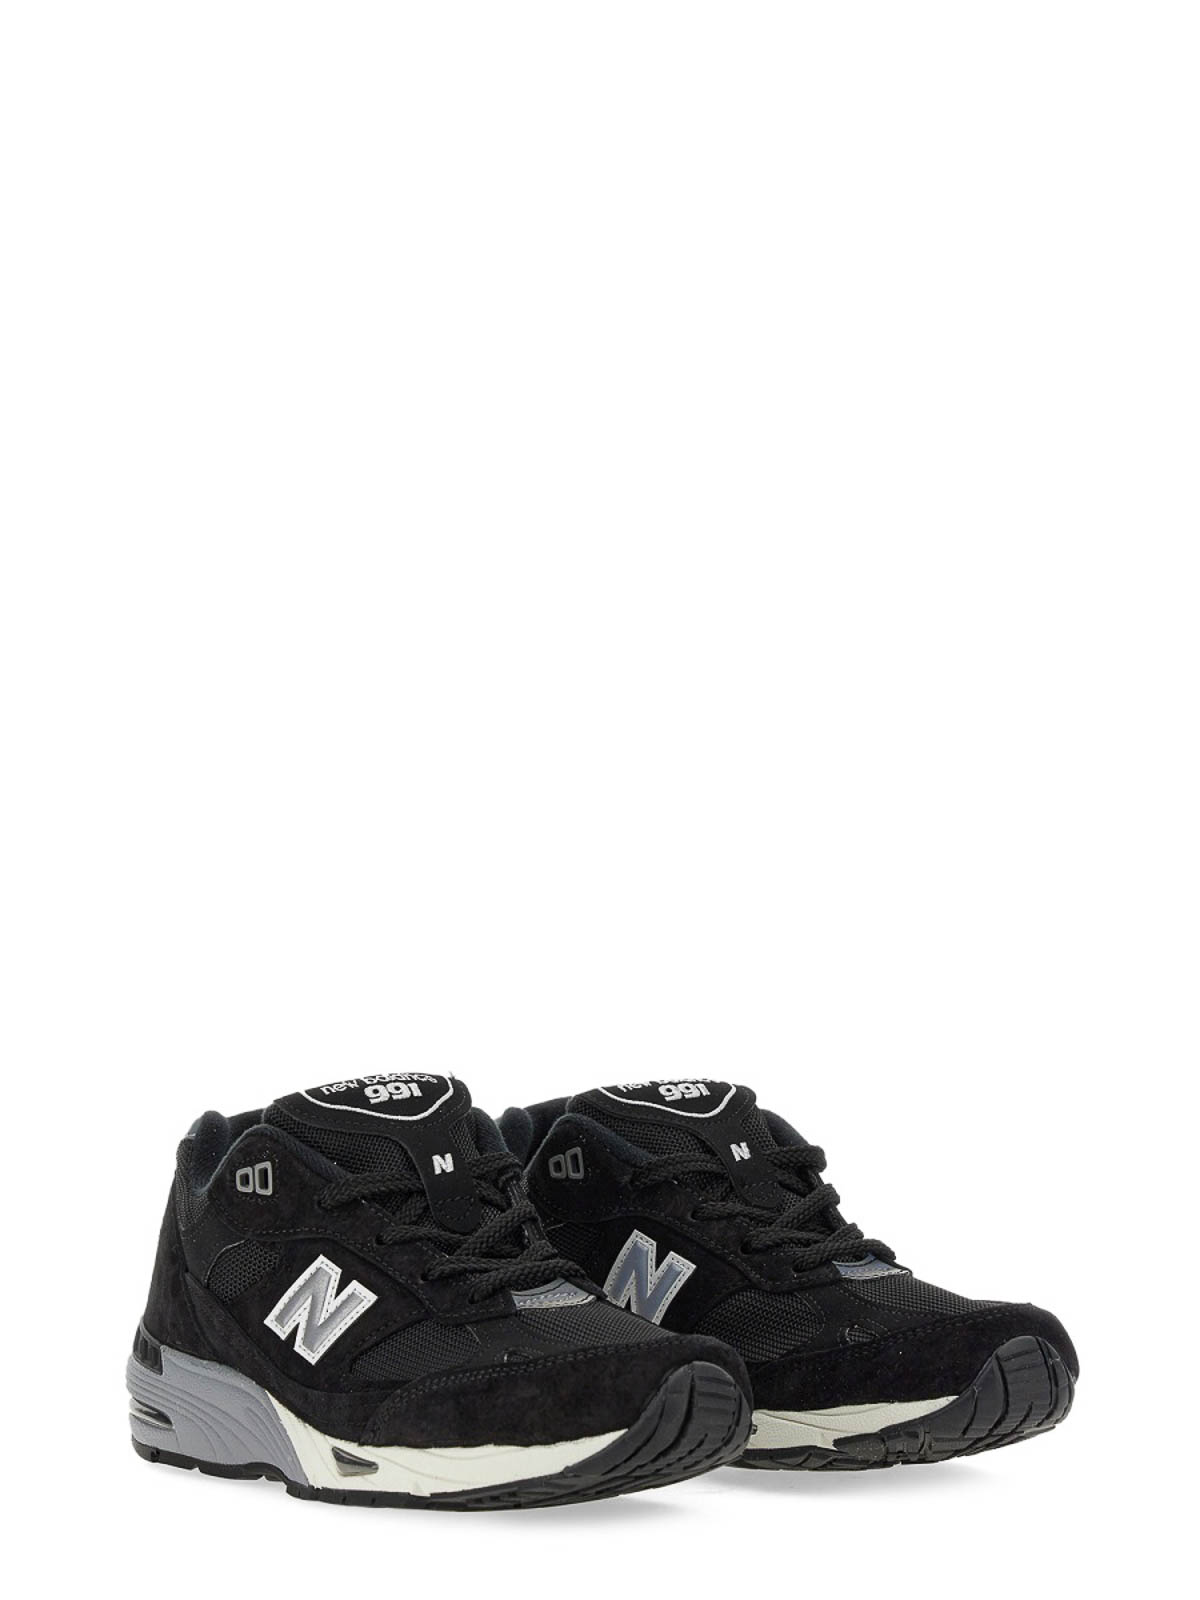 Shop New Balance Zapatillas - 991 In Black